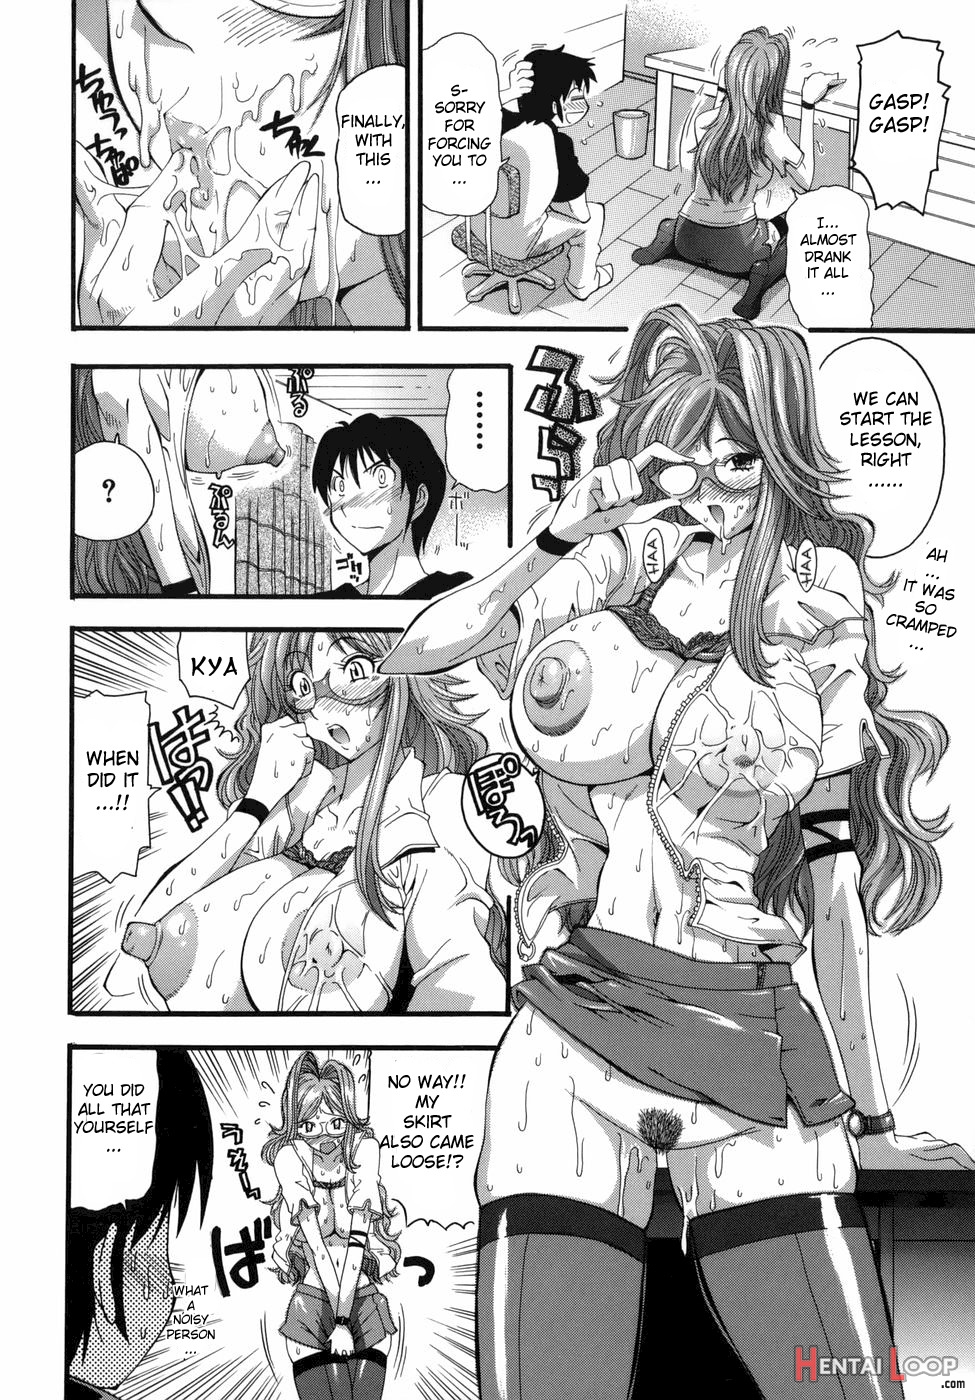 One More Lesson, Haruka-sensei page 10